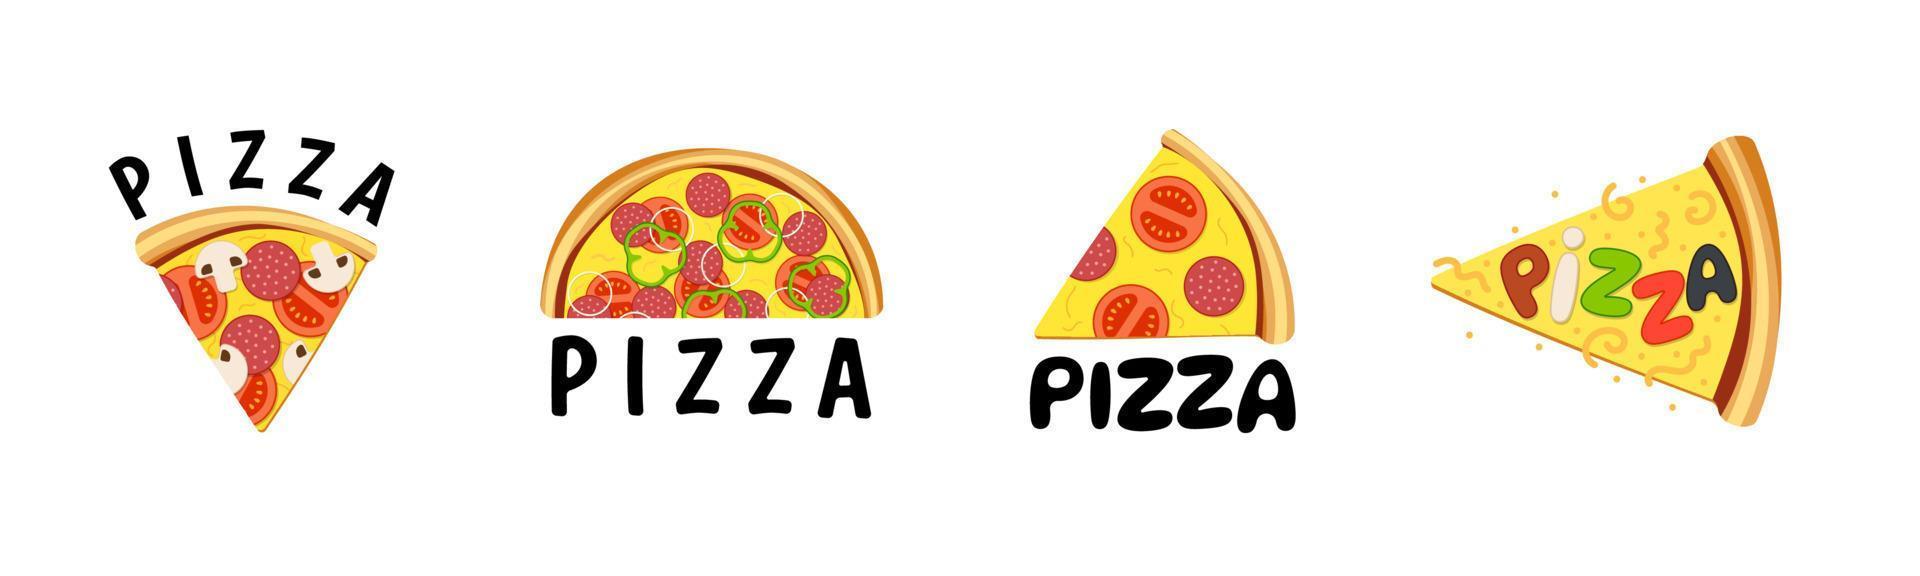 Pizza house company branding modello di progettazione simbolo creativo impostato per pizzeria bar o ristorante. logo della panetteria della cucina tradizionale italiana. distintivo colorato eps vettoriali